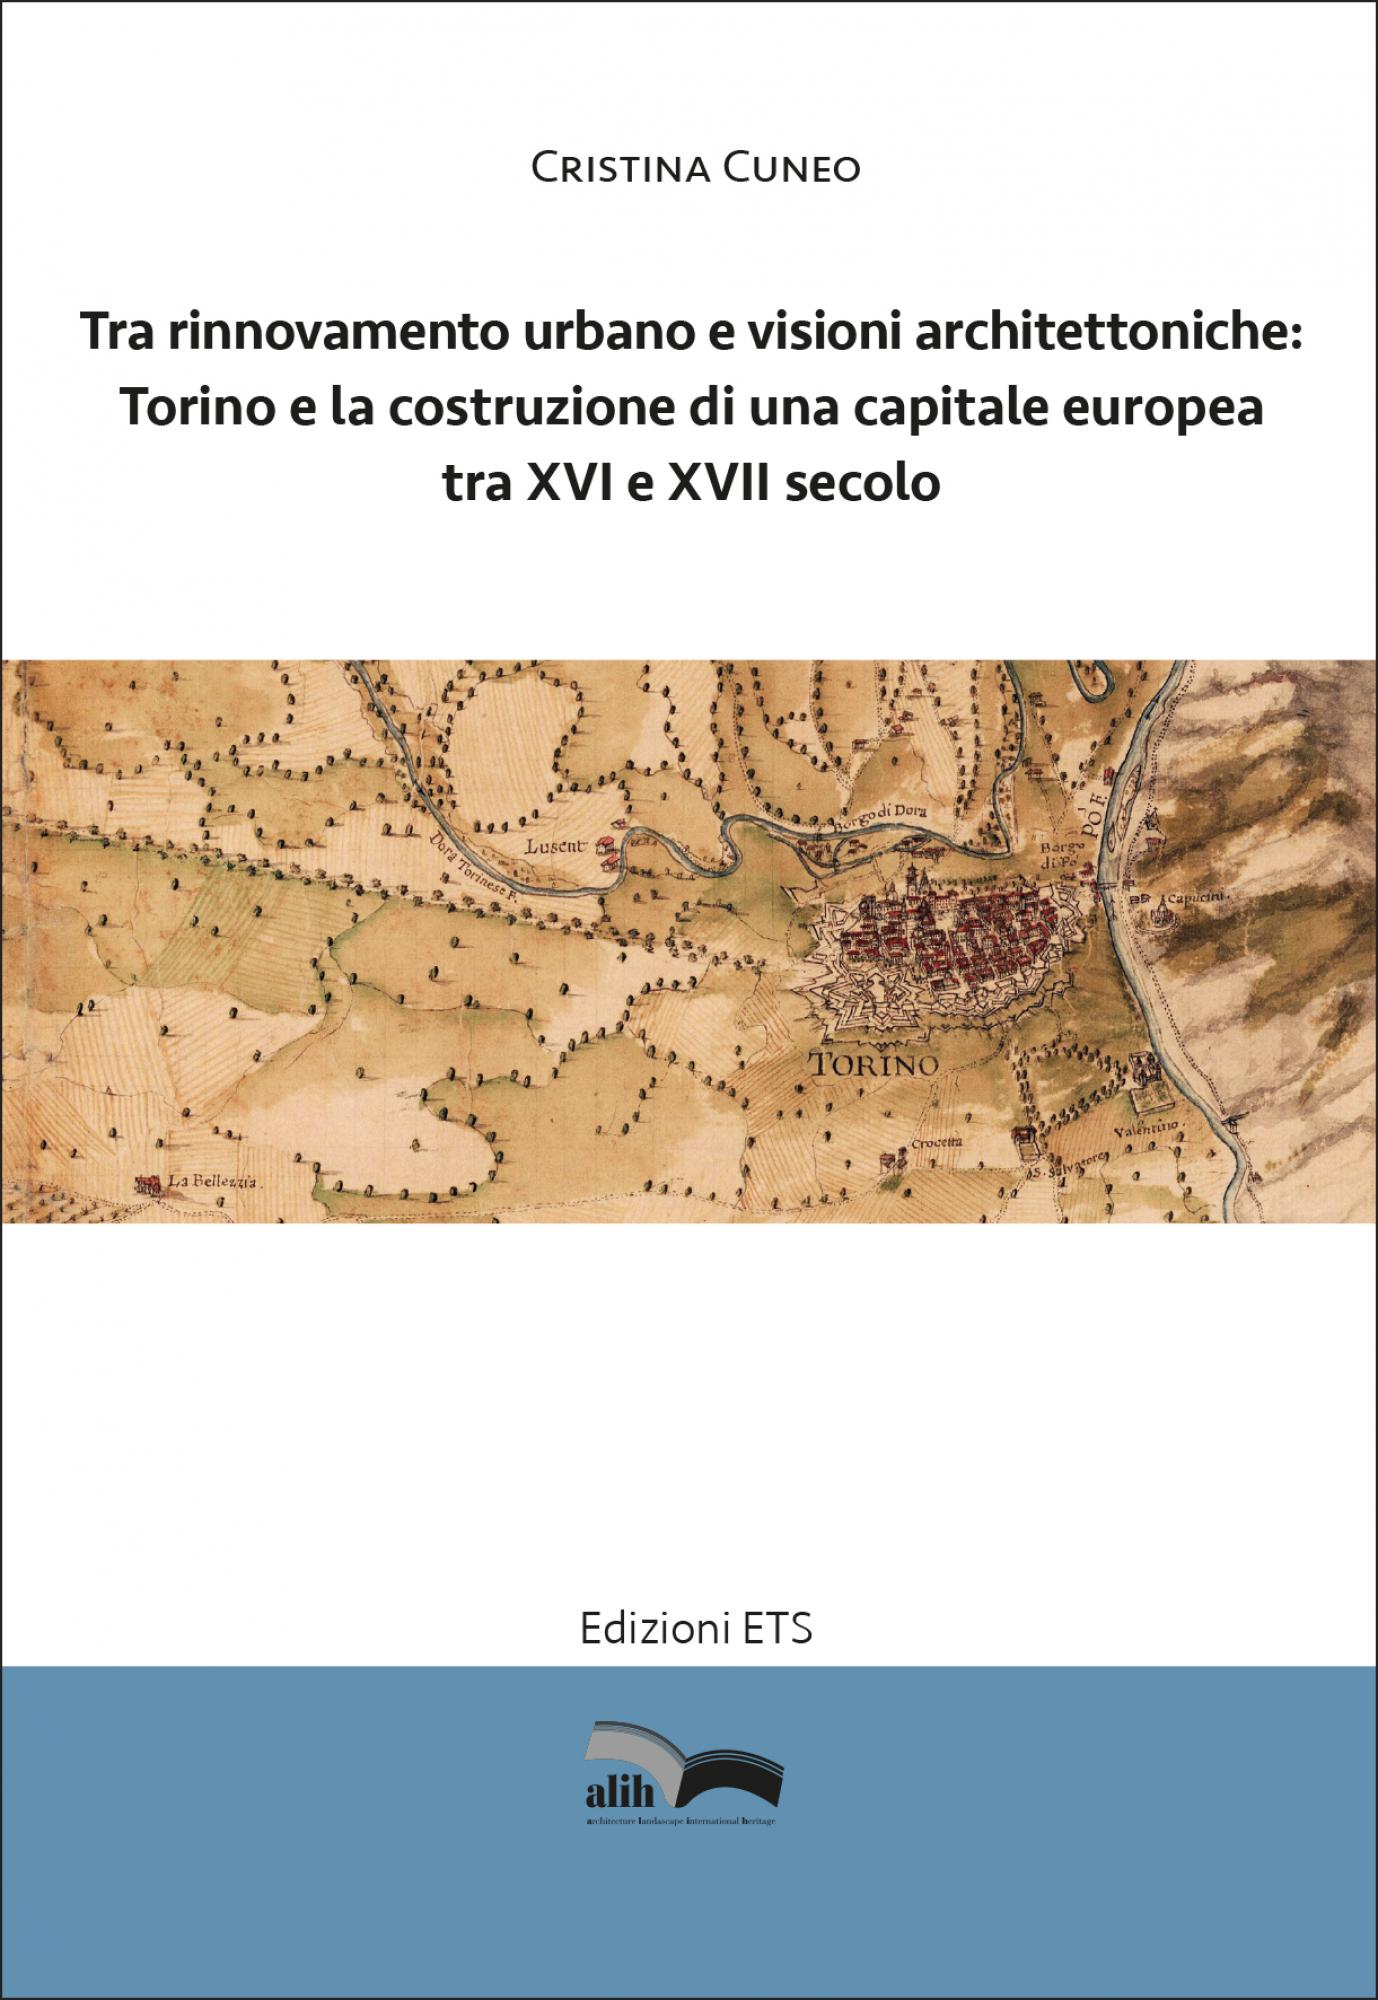 <div><span>Tra rinnovamento urbano e visioni architettoniche: Torino e la costruzione di una capitale europea tra XVI e XVII secolo</span></div>
 